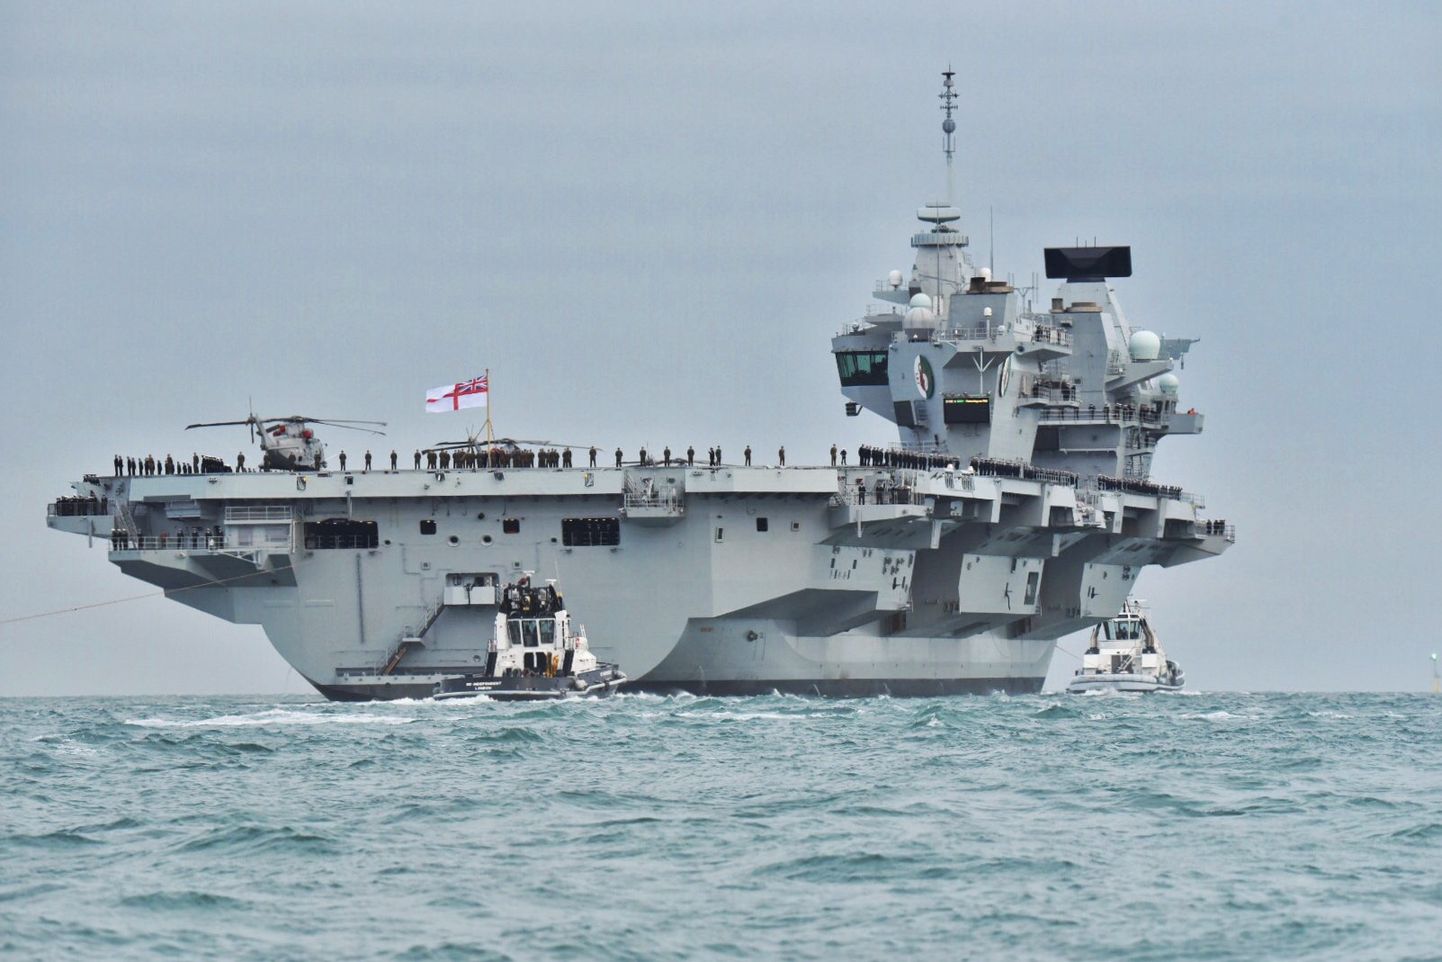 HMS Queen Elizabeth.